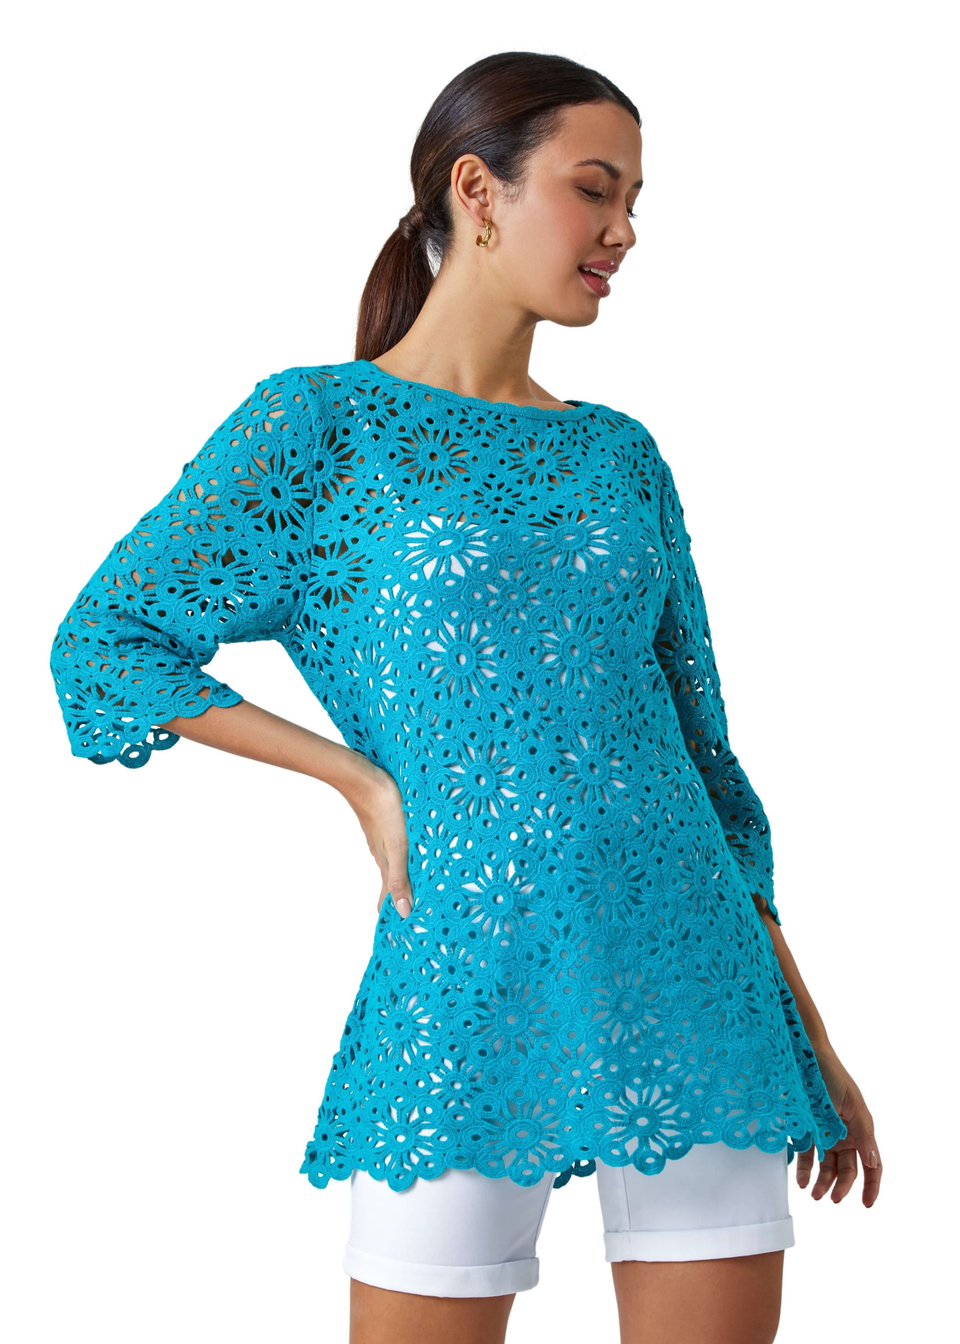 Turquoise Floral Cotton Crochet Top